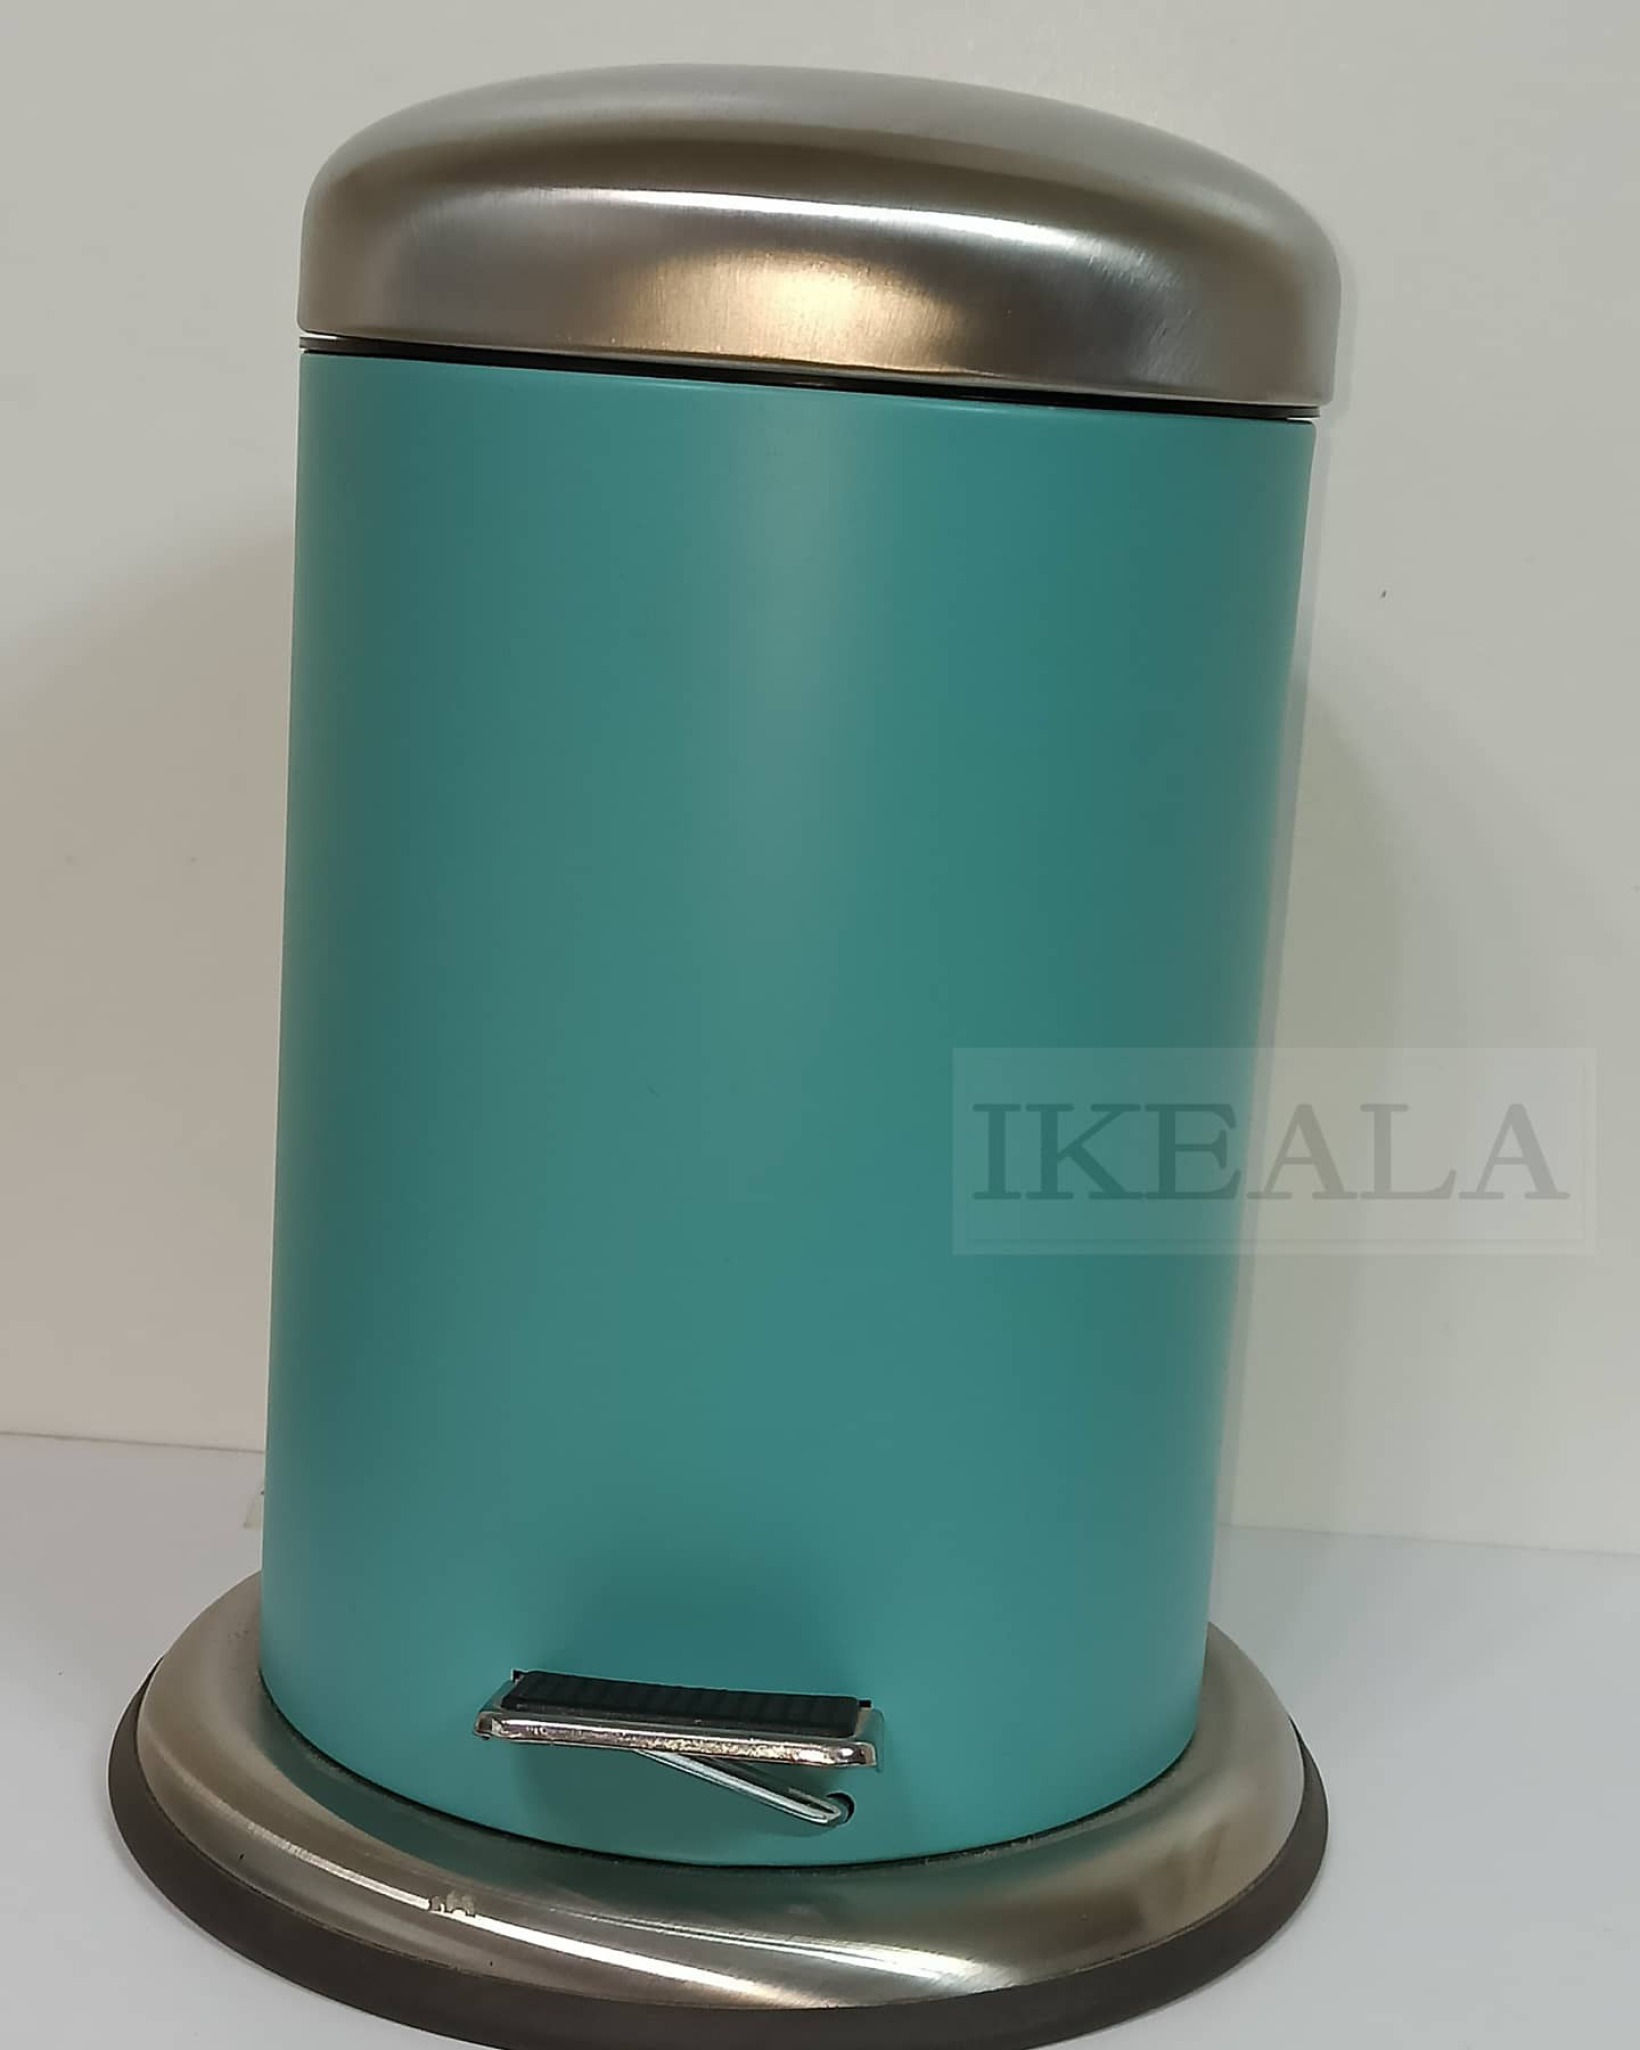  سطل پدالی ایکیادوتکه دارای یک سطل داخلی که دارای یک دسته می باشد جهت راحتتر برداشتن سطل داخلی 